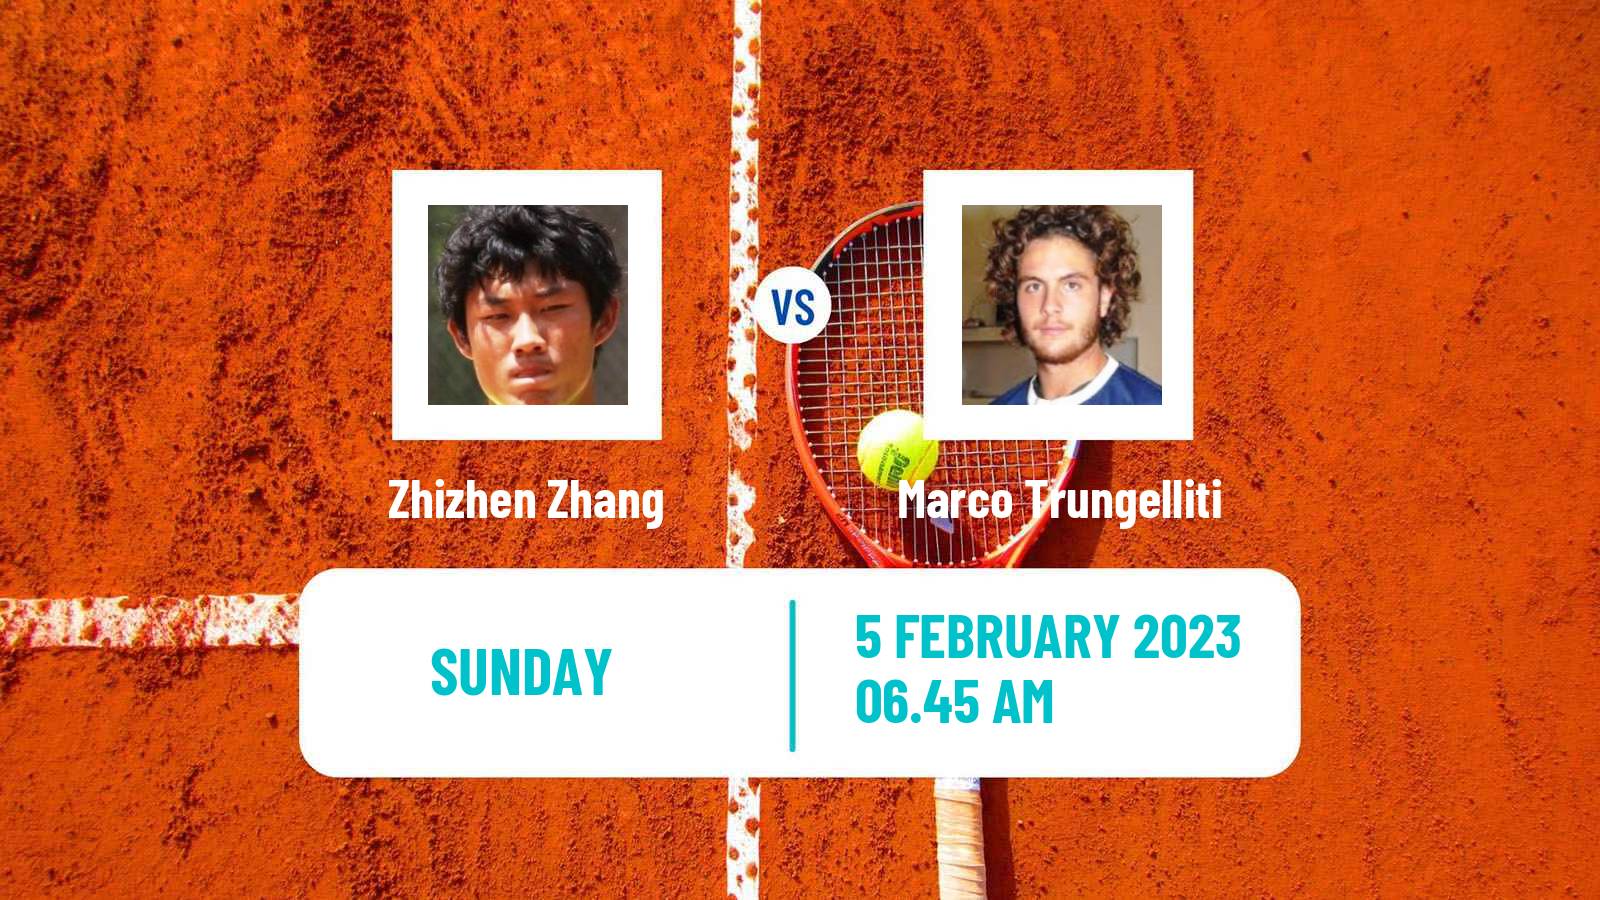 Tennis ATP Montpellier Zhizhen Zhang - Marco Trungelliti